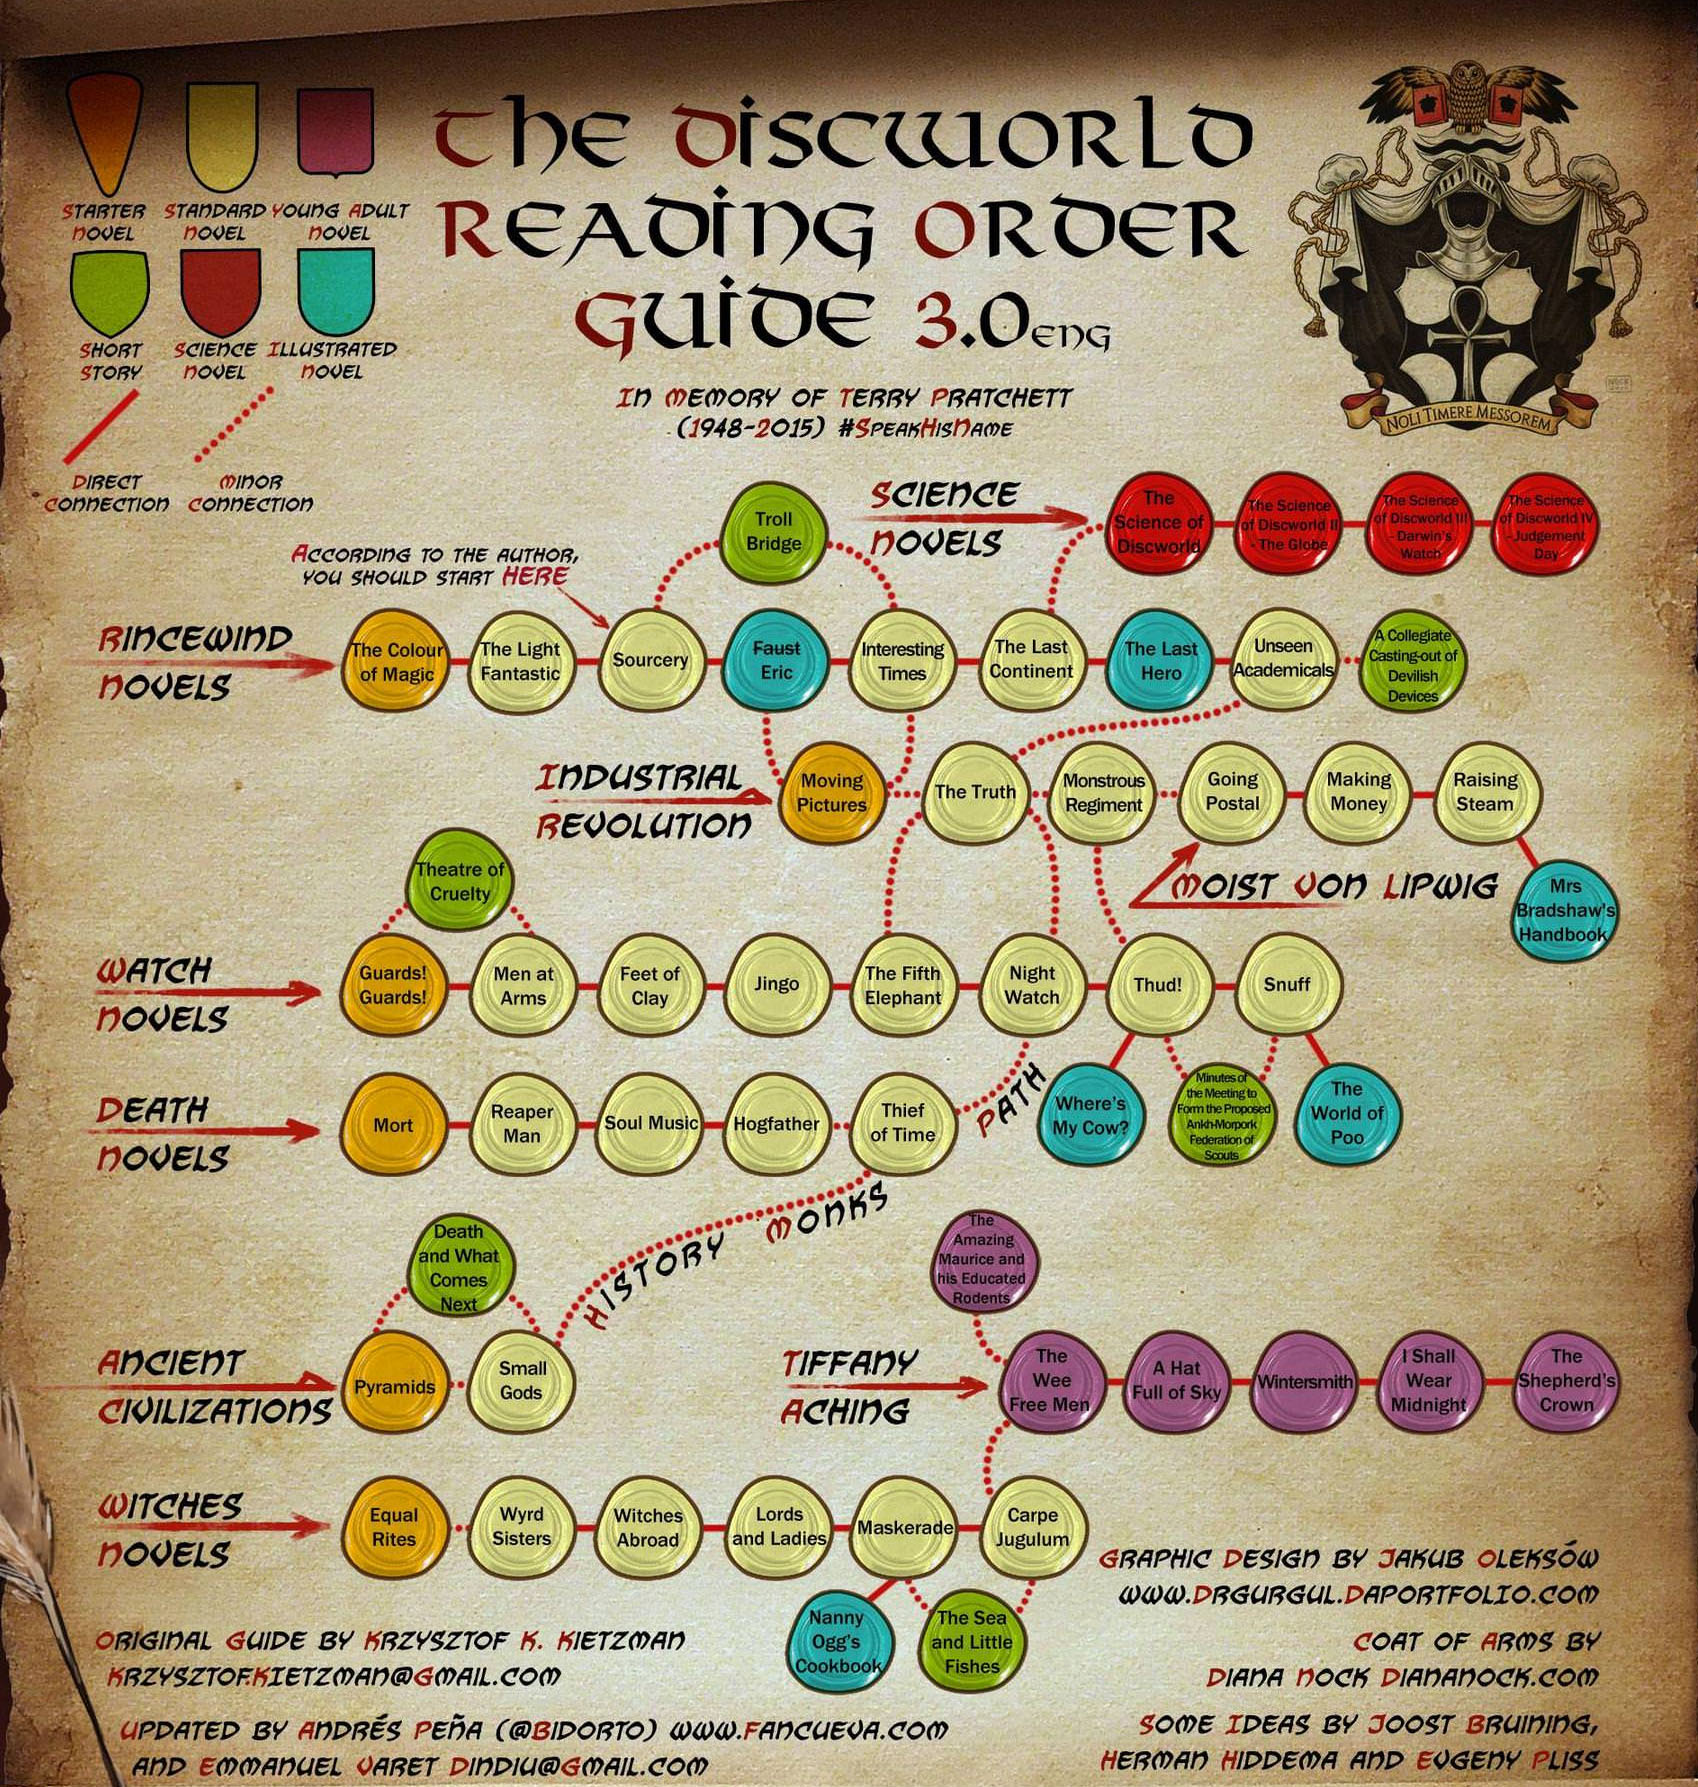 Discworld reader's guide